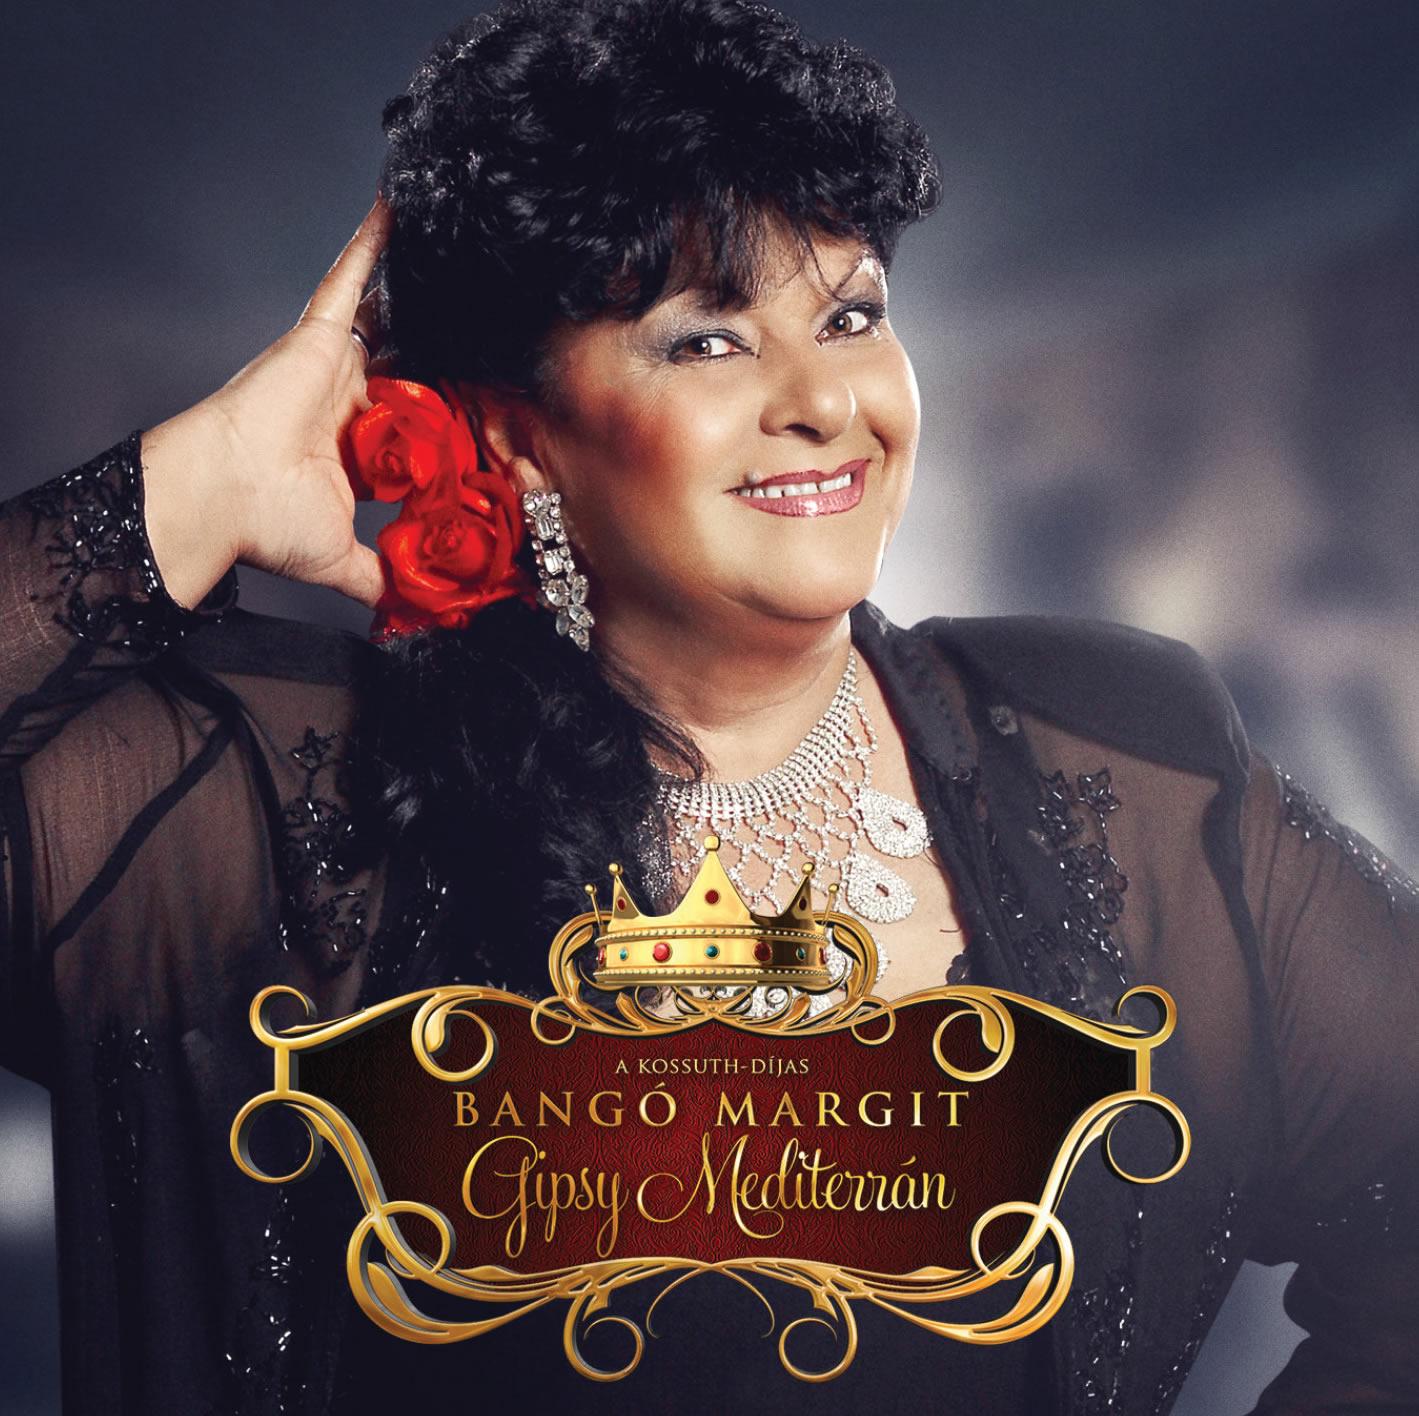 Megjelent! Bangó Margit – Gypsy Mediterrán című album!